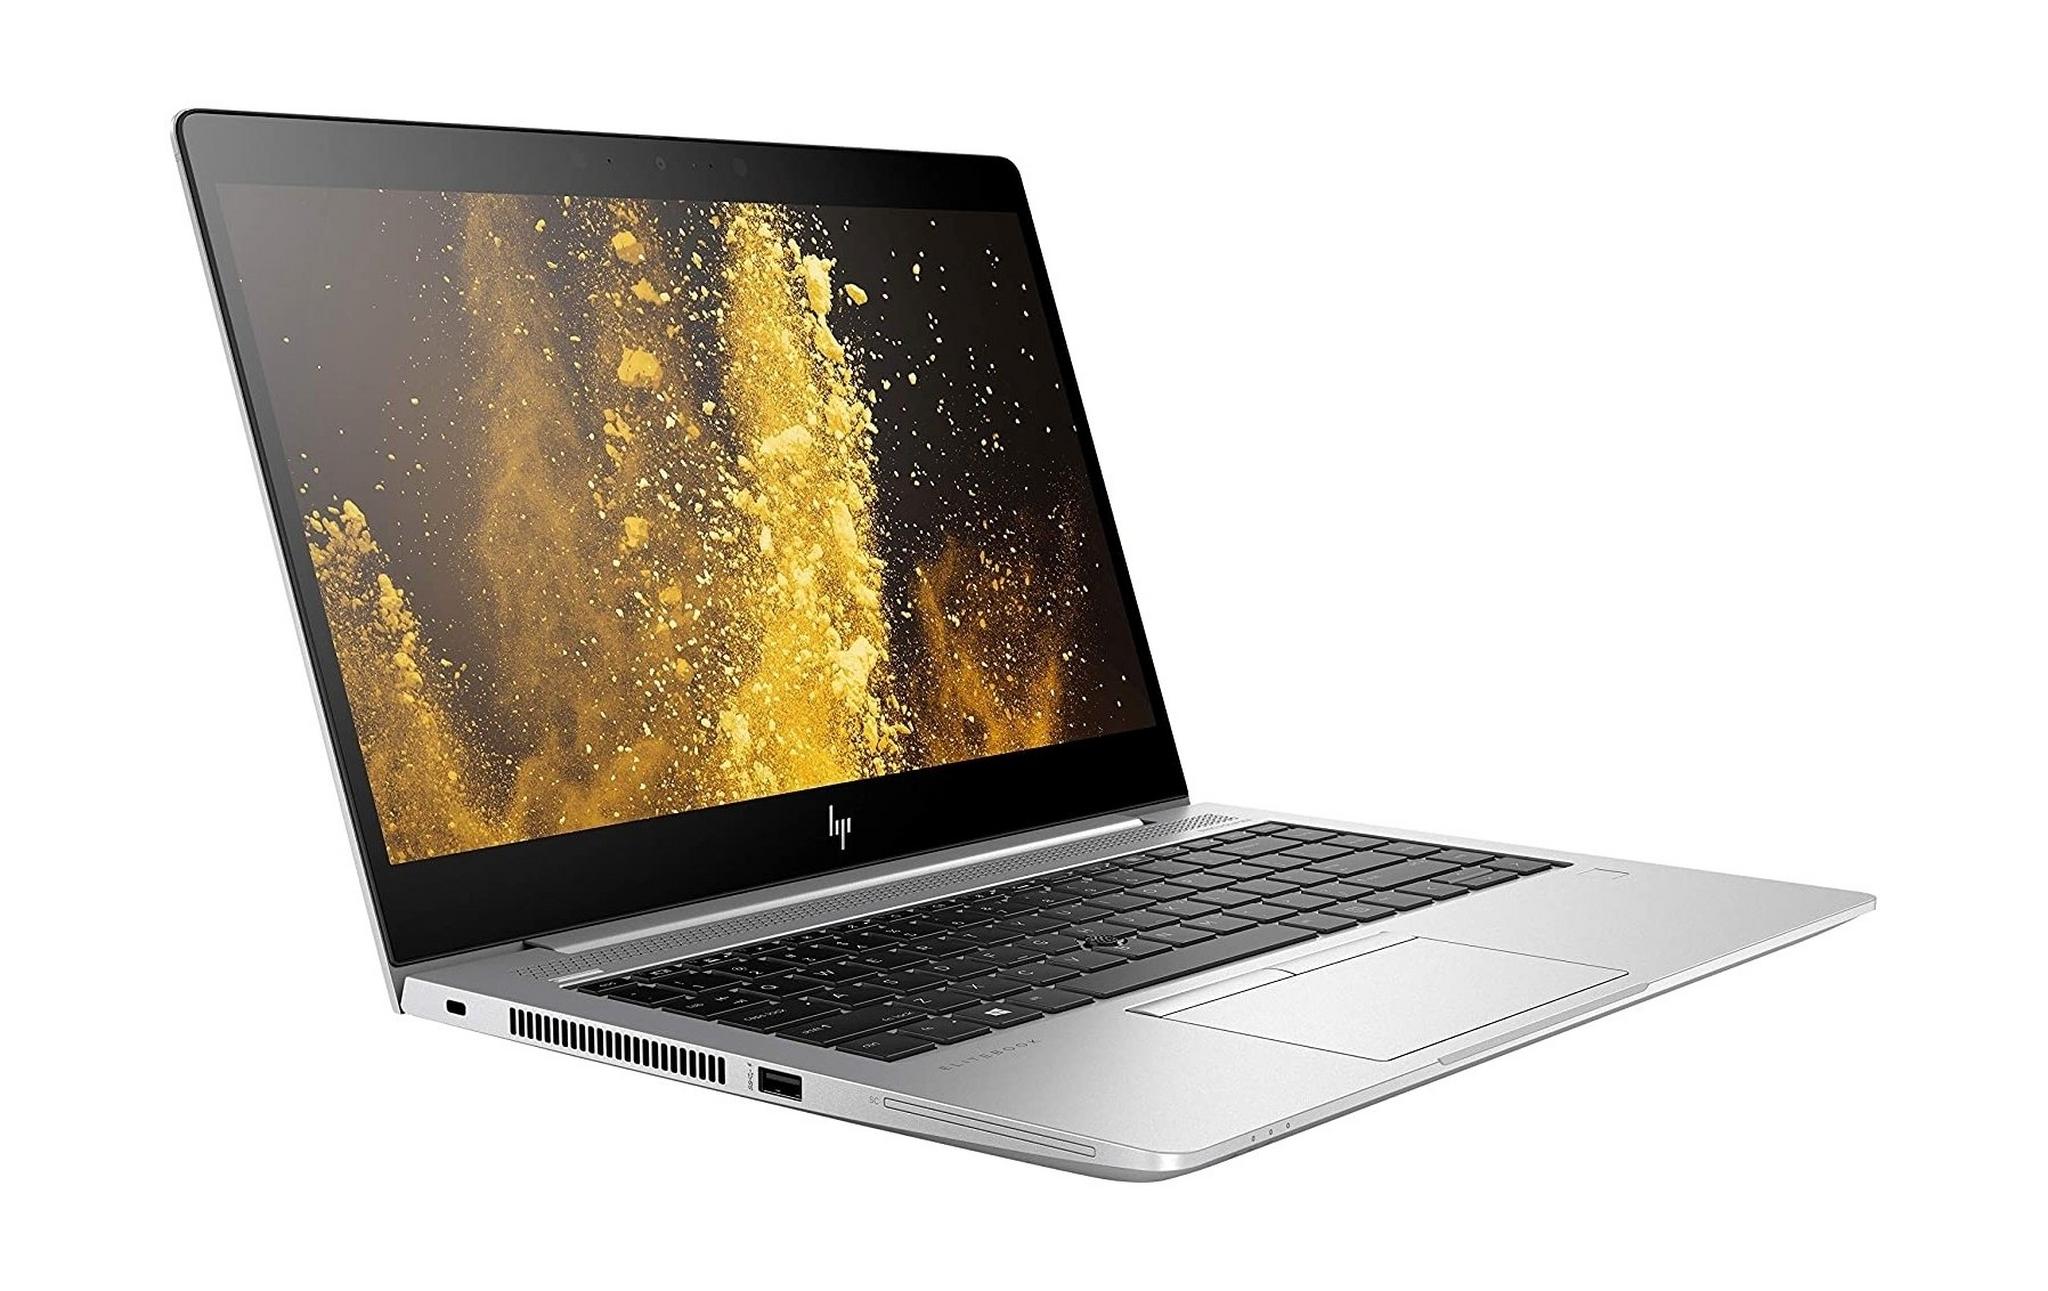 HP Elitebook 840 Intel Core i7 8GB RAM 512GB SSD 14" Laptop (177C8EA) - Silver